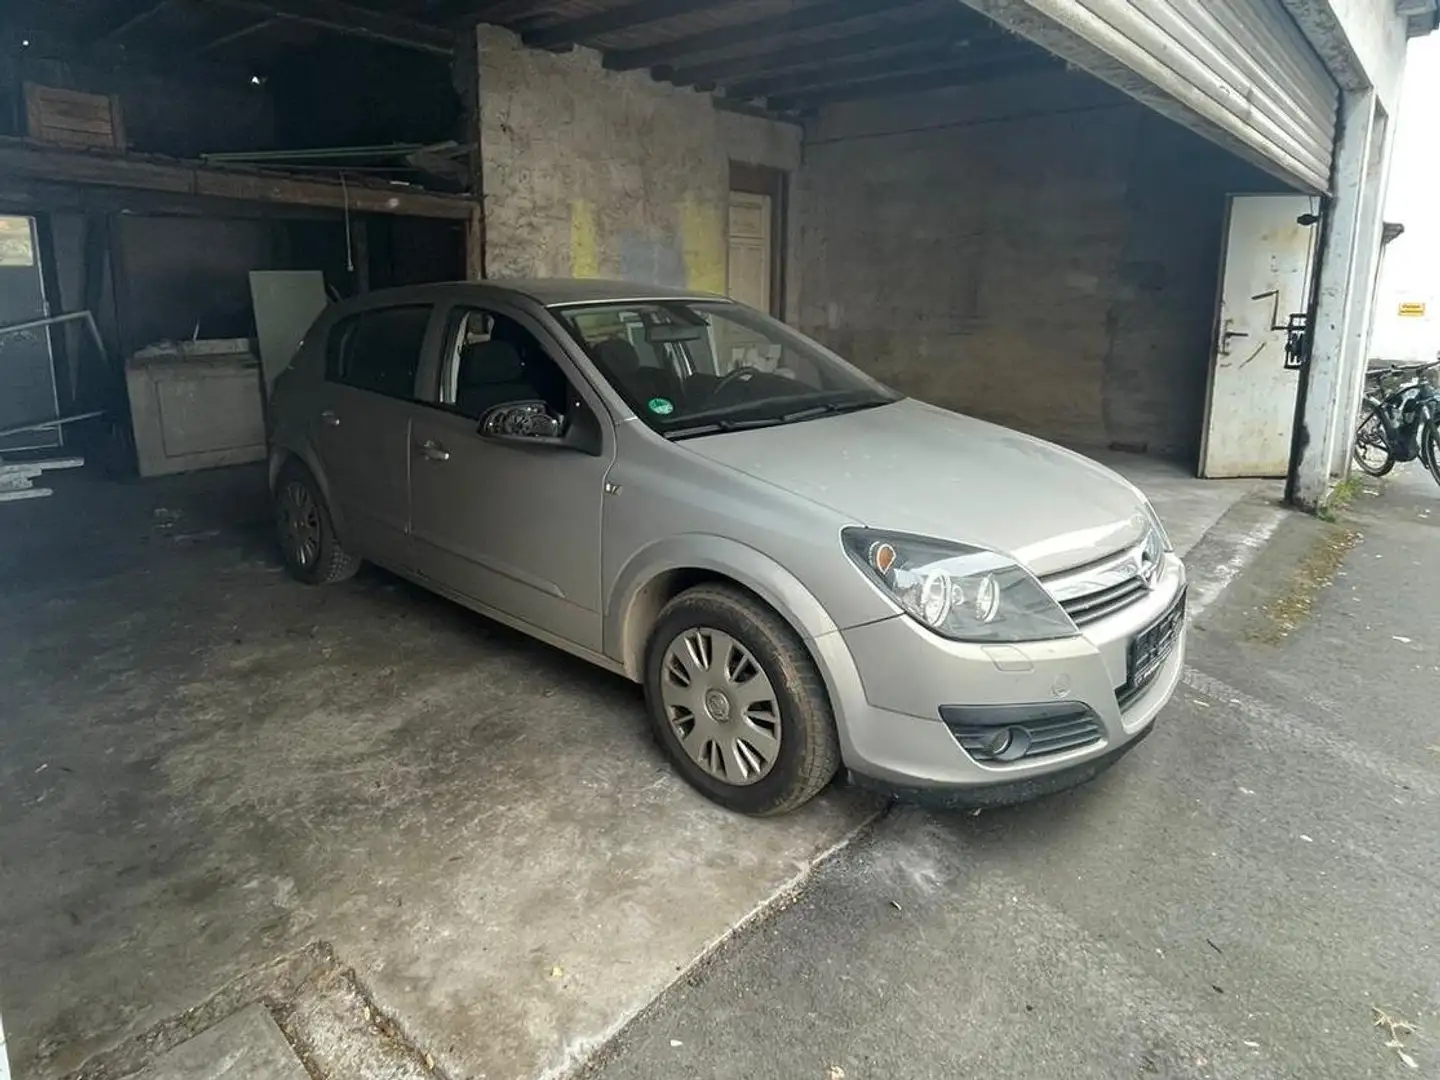 Opel Astra [seit einem Jahr abgemeldet in der Garage] 1.6er Bej - 2